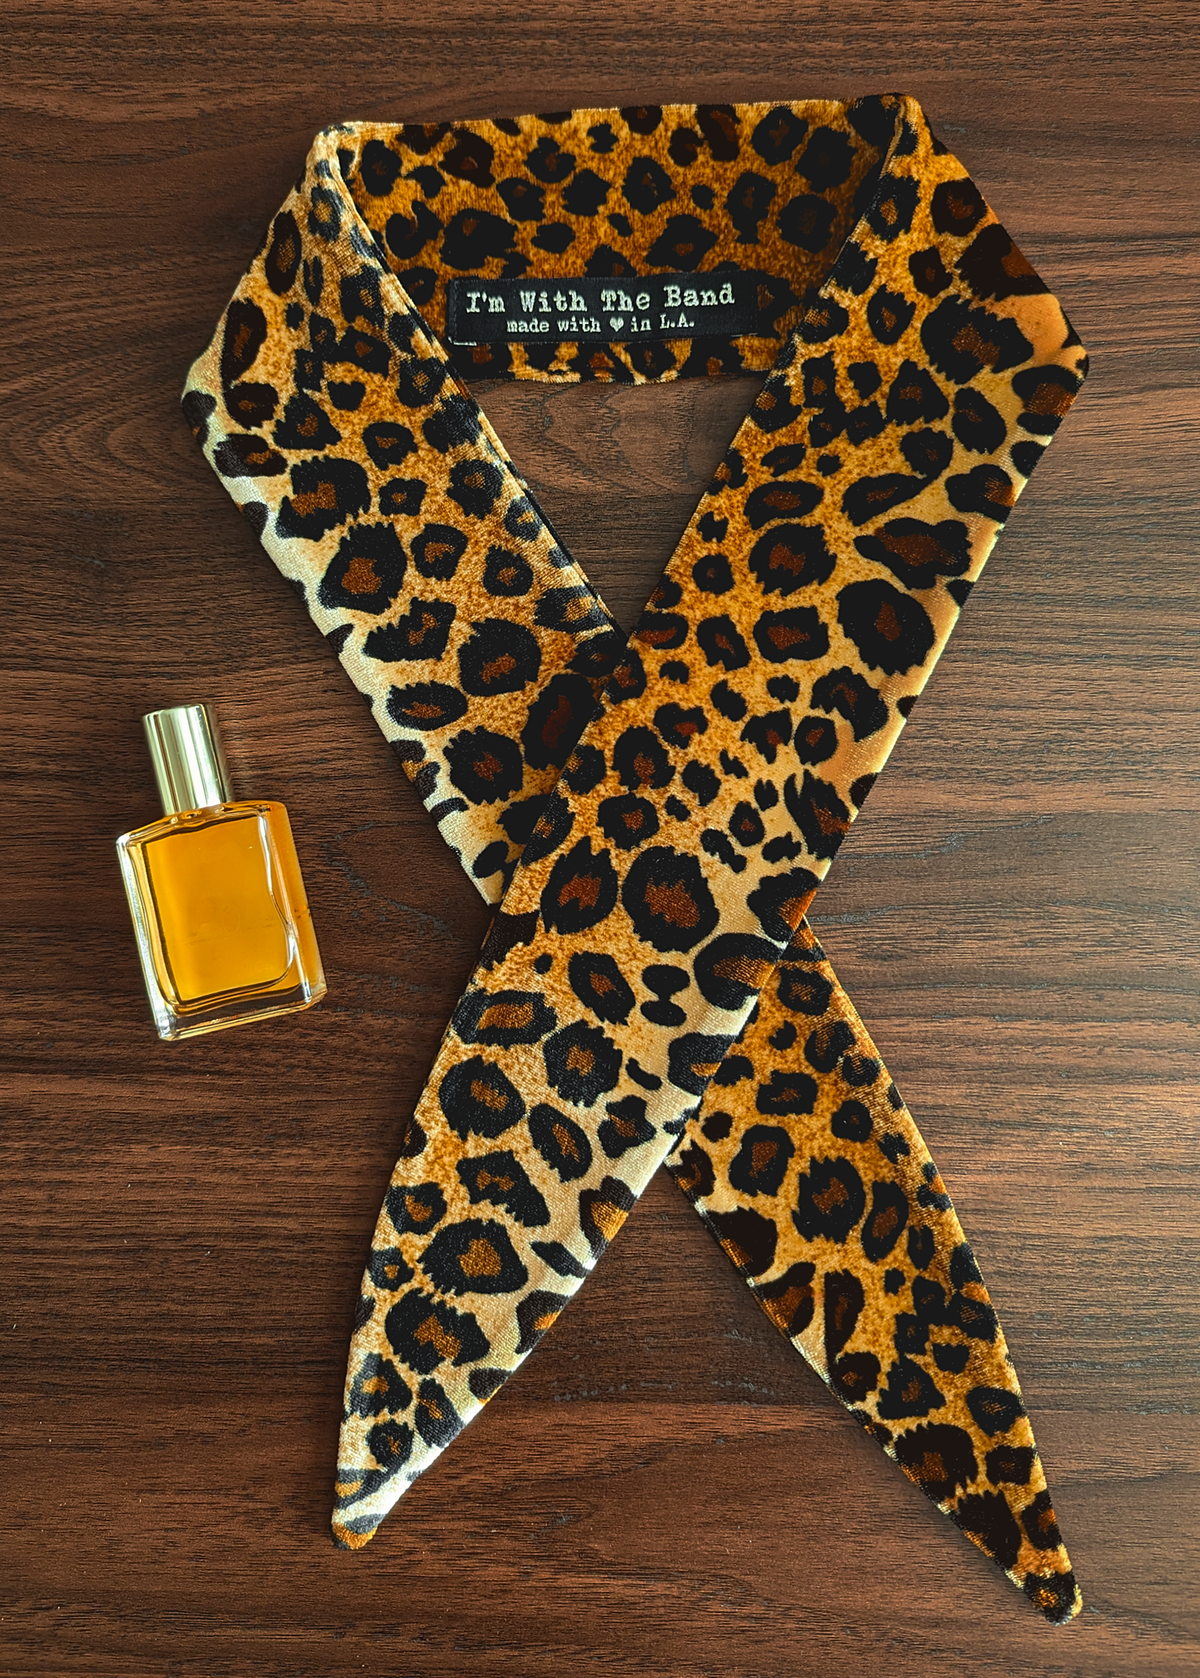 The Bebe Leopard Velvet Scarf Tie